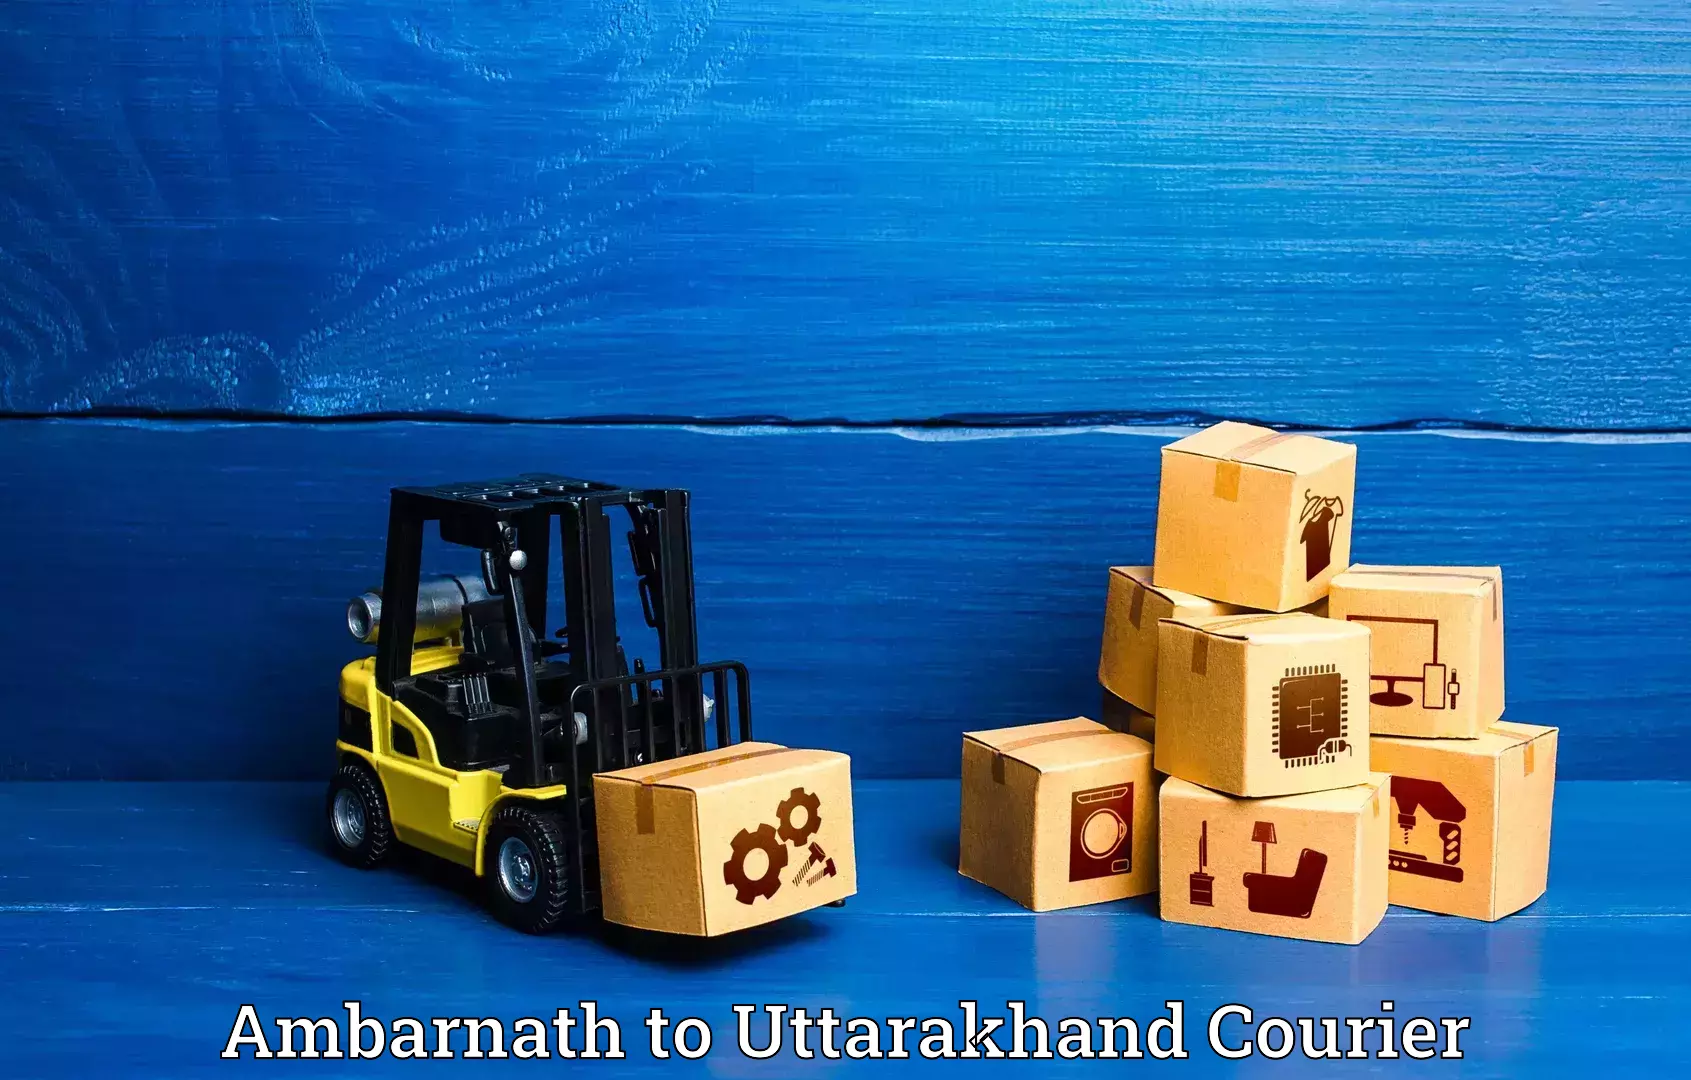 Global baggage shipping Ambarnath to Rudraprayag